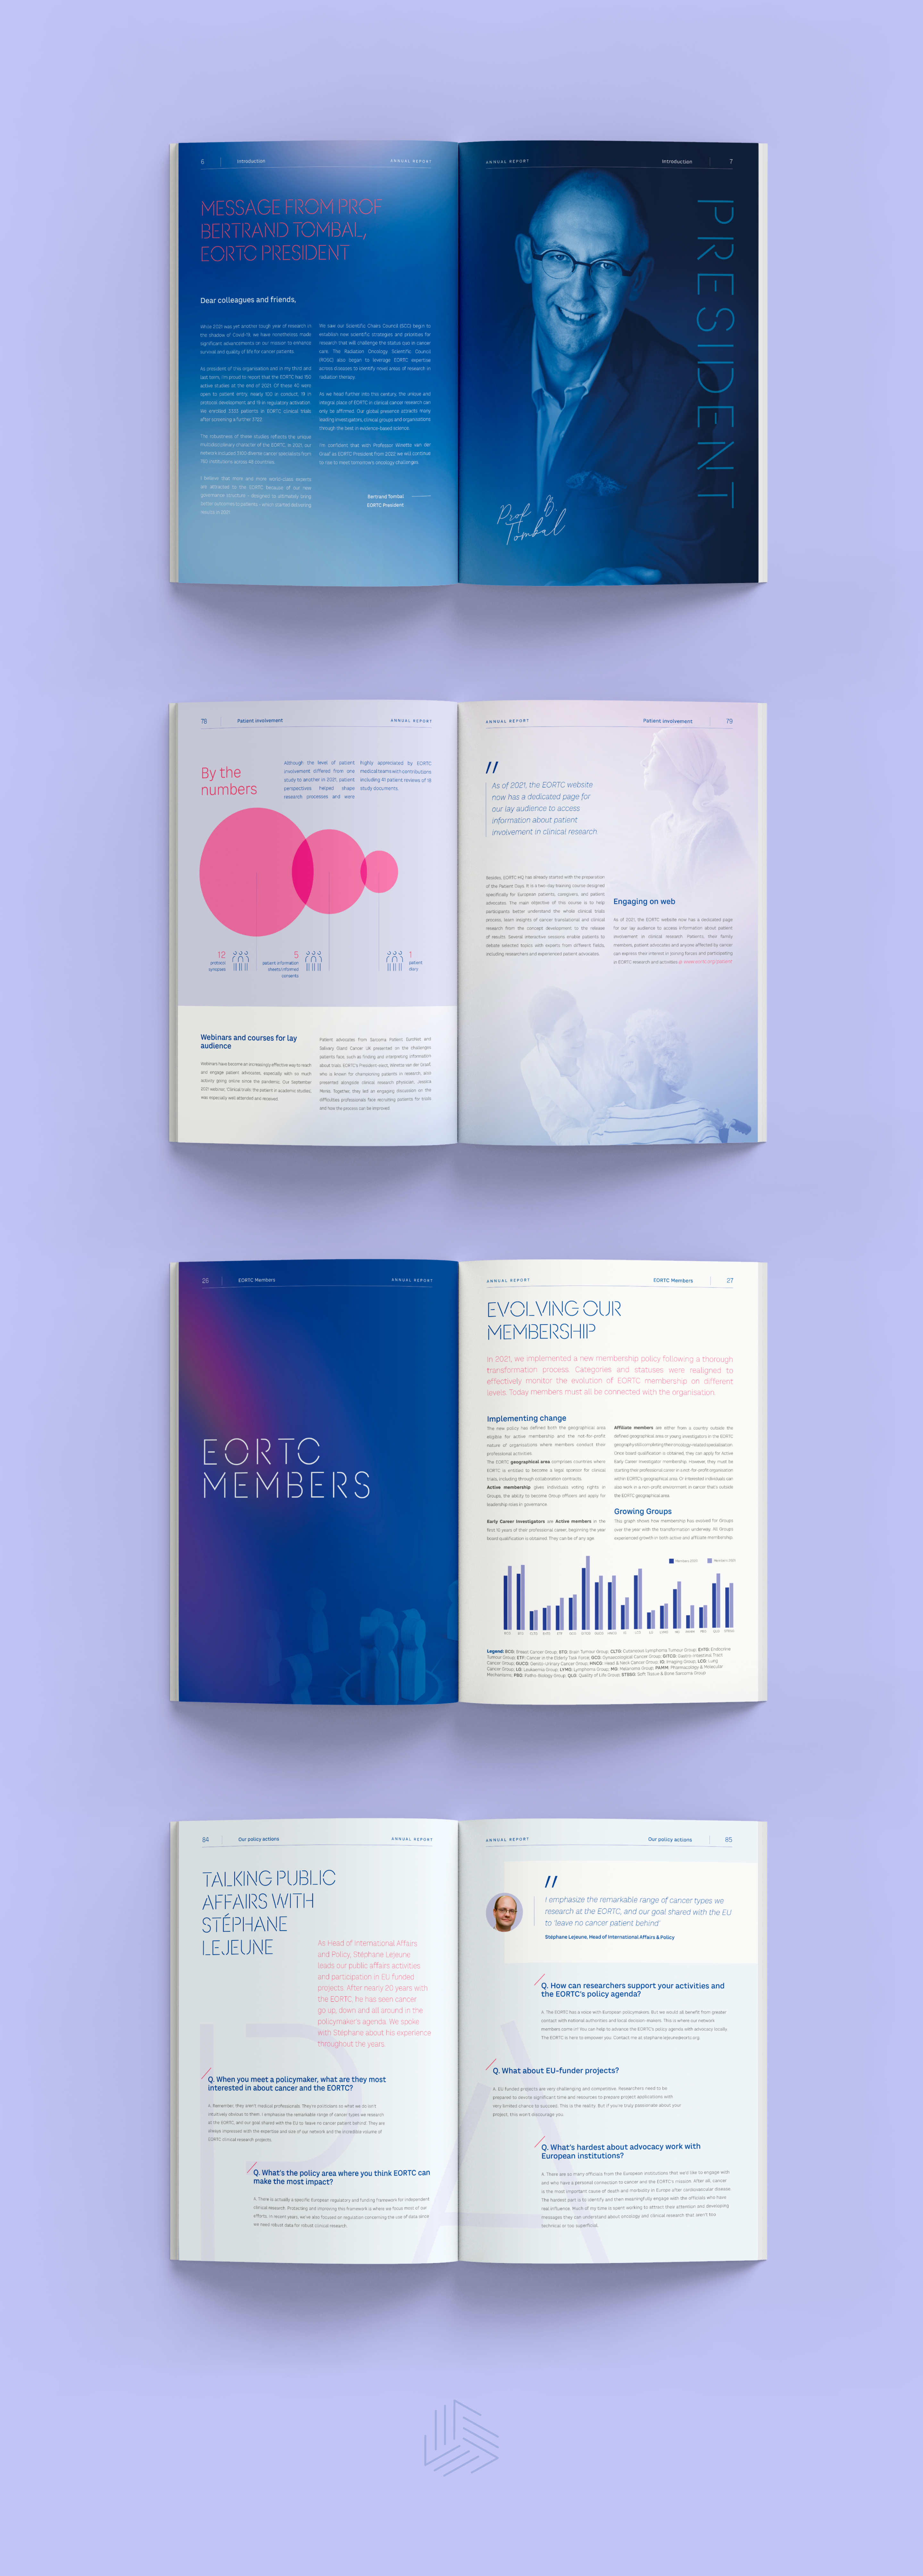 Enkele voorbeelden van infographics en pagina's voor het EORTC-jaarverslag door Atelier Design, creatief communicatiebureau Brussel